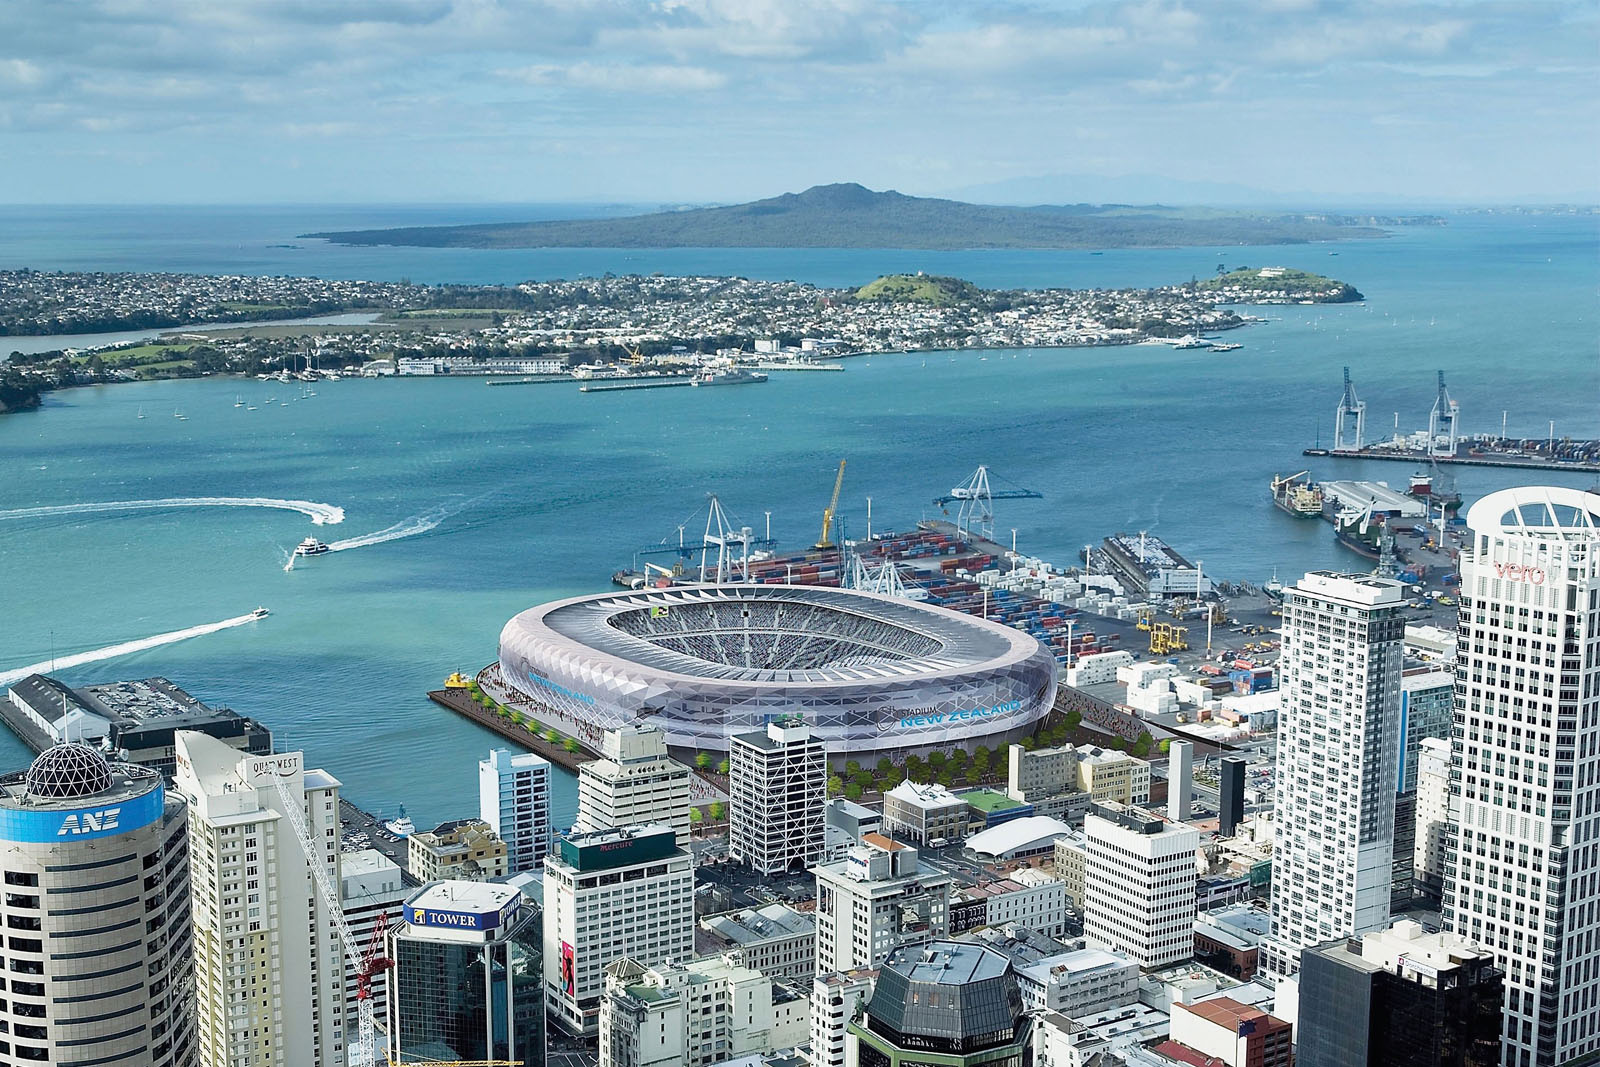 2011年世界盃欖球賽計劃在新西蘭興建新的國家體育館